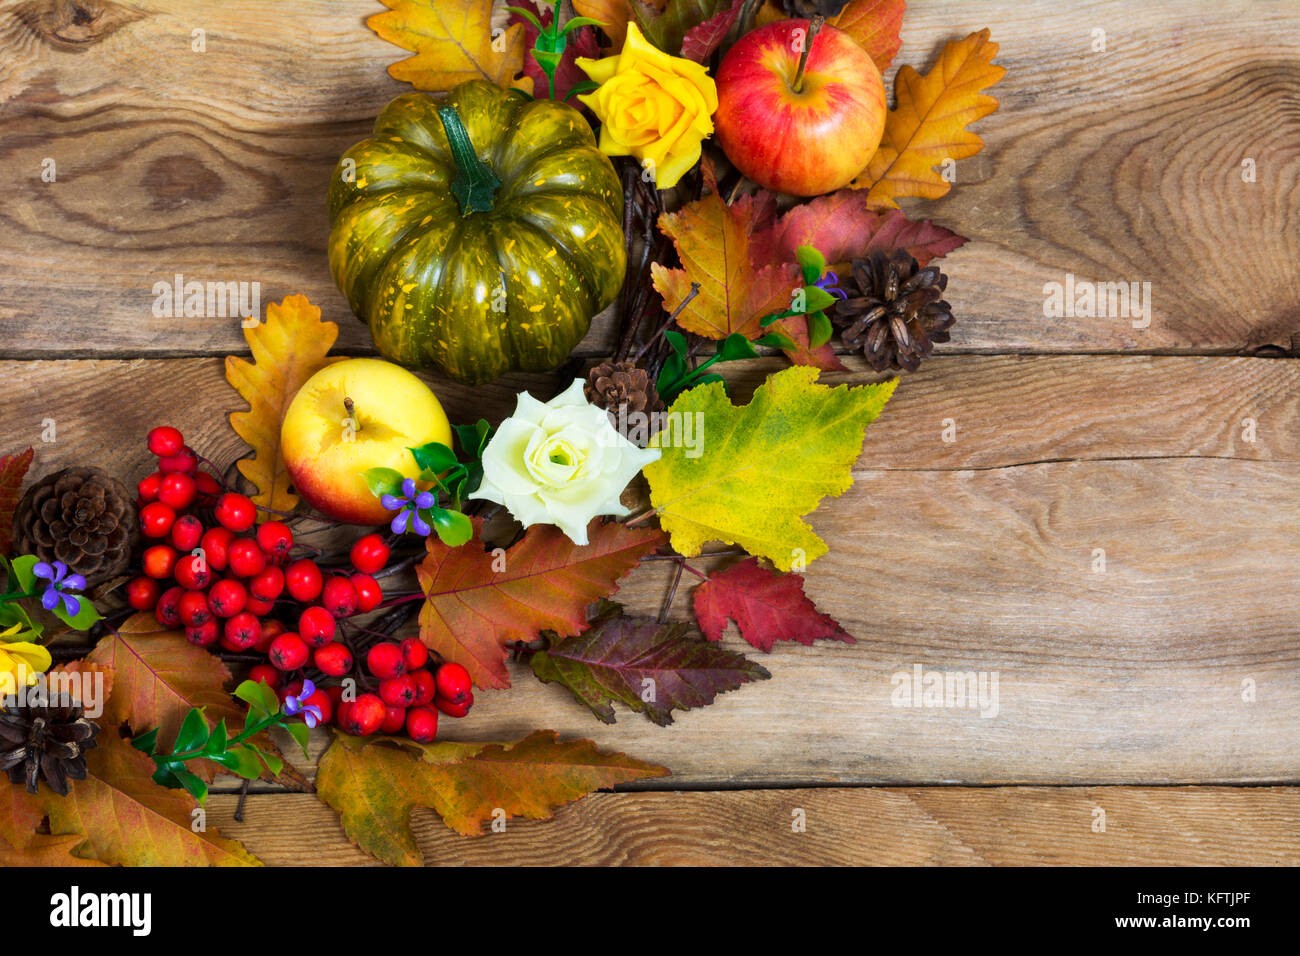 Lá đỏ vàng mùa thu cùng với nền đồng quê là bức tranh sống động thể hiện sự độc đáo của mùa thu. Hãy để ngất ngây với mùi hương và màu sắc của mùa thu qua những bức hình đẹp.